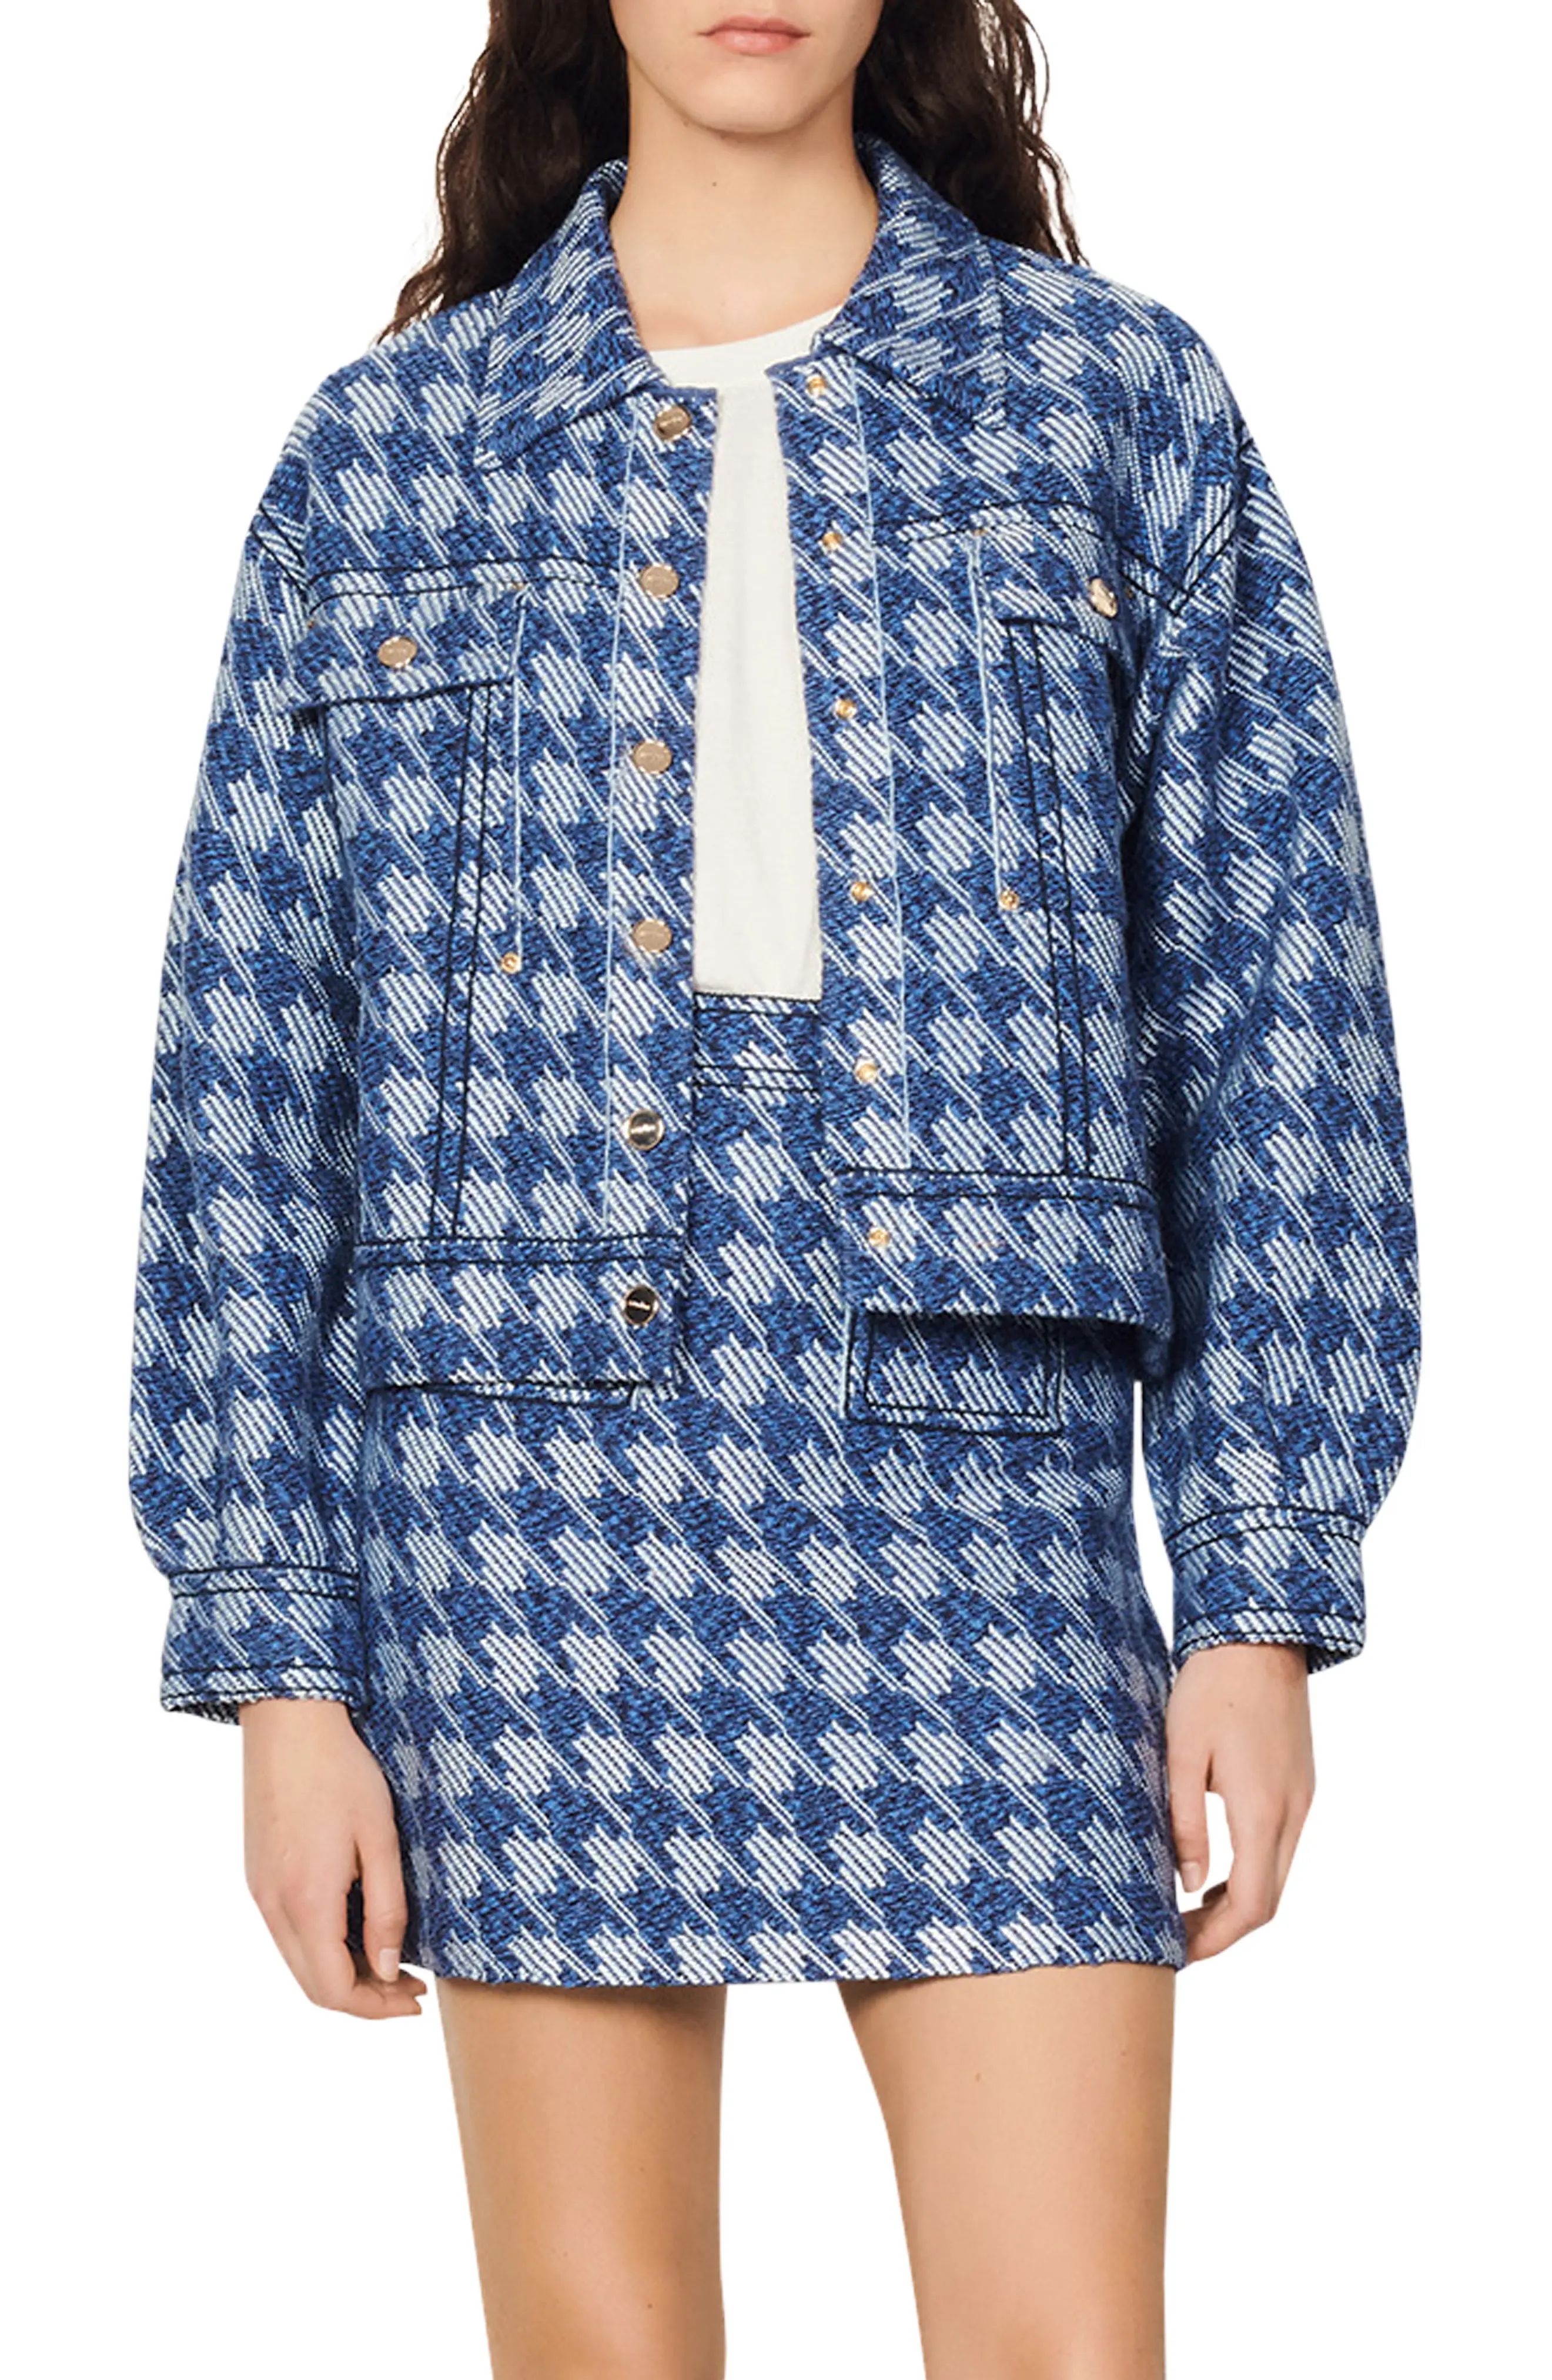 sandro Balthazar Houndstooth Cotton Blend Jacket in Blue at Nordstrom, Size 3 | Nordstrom